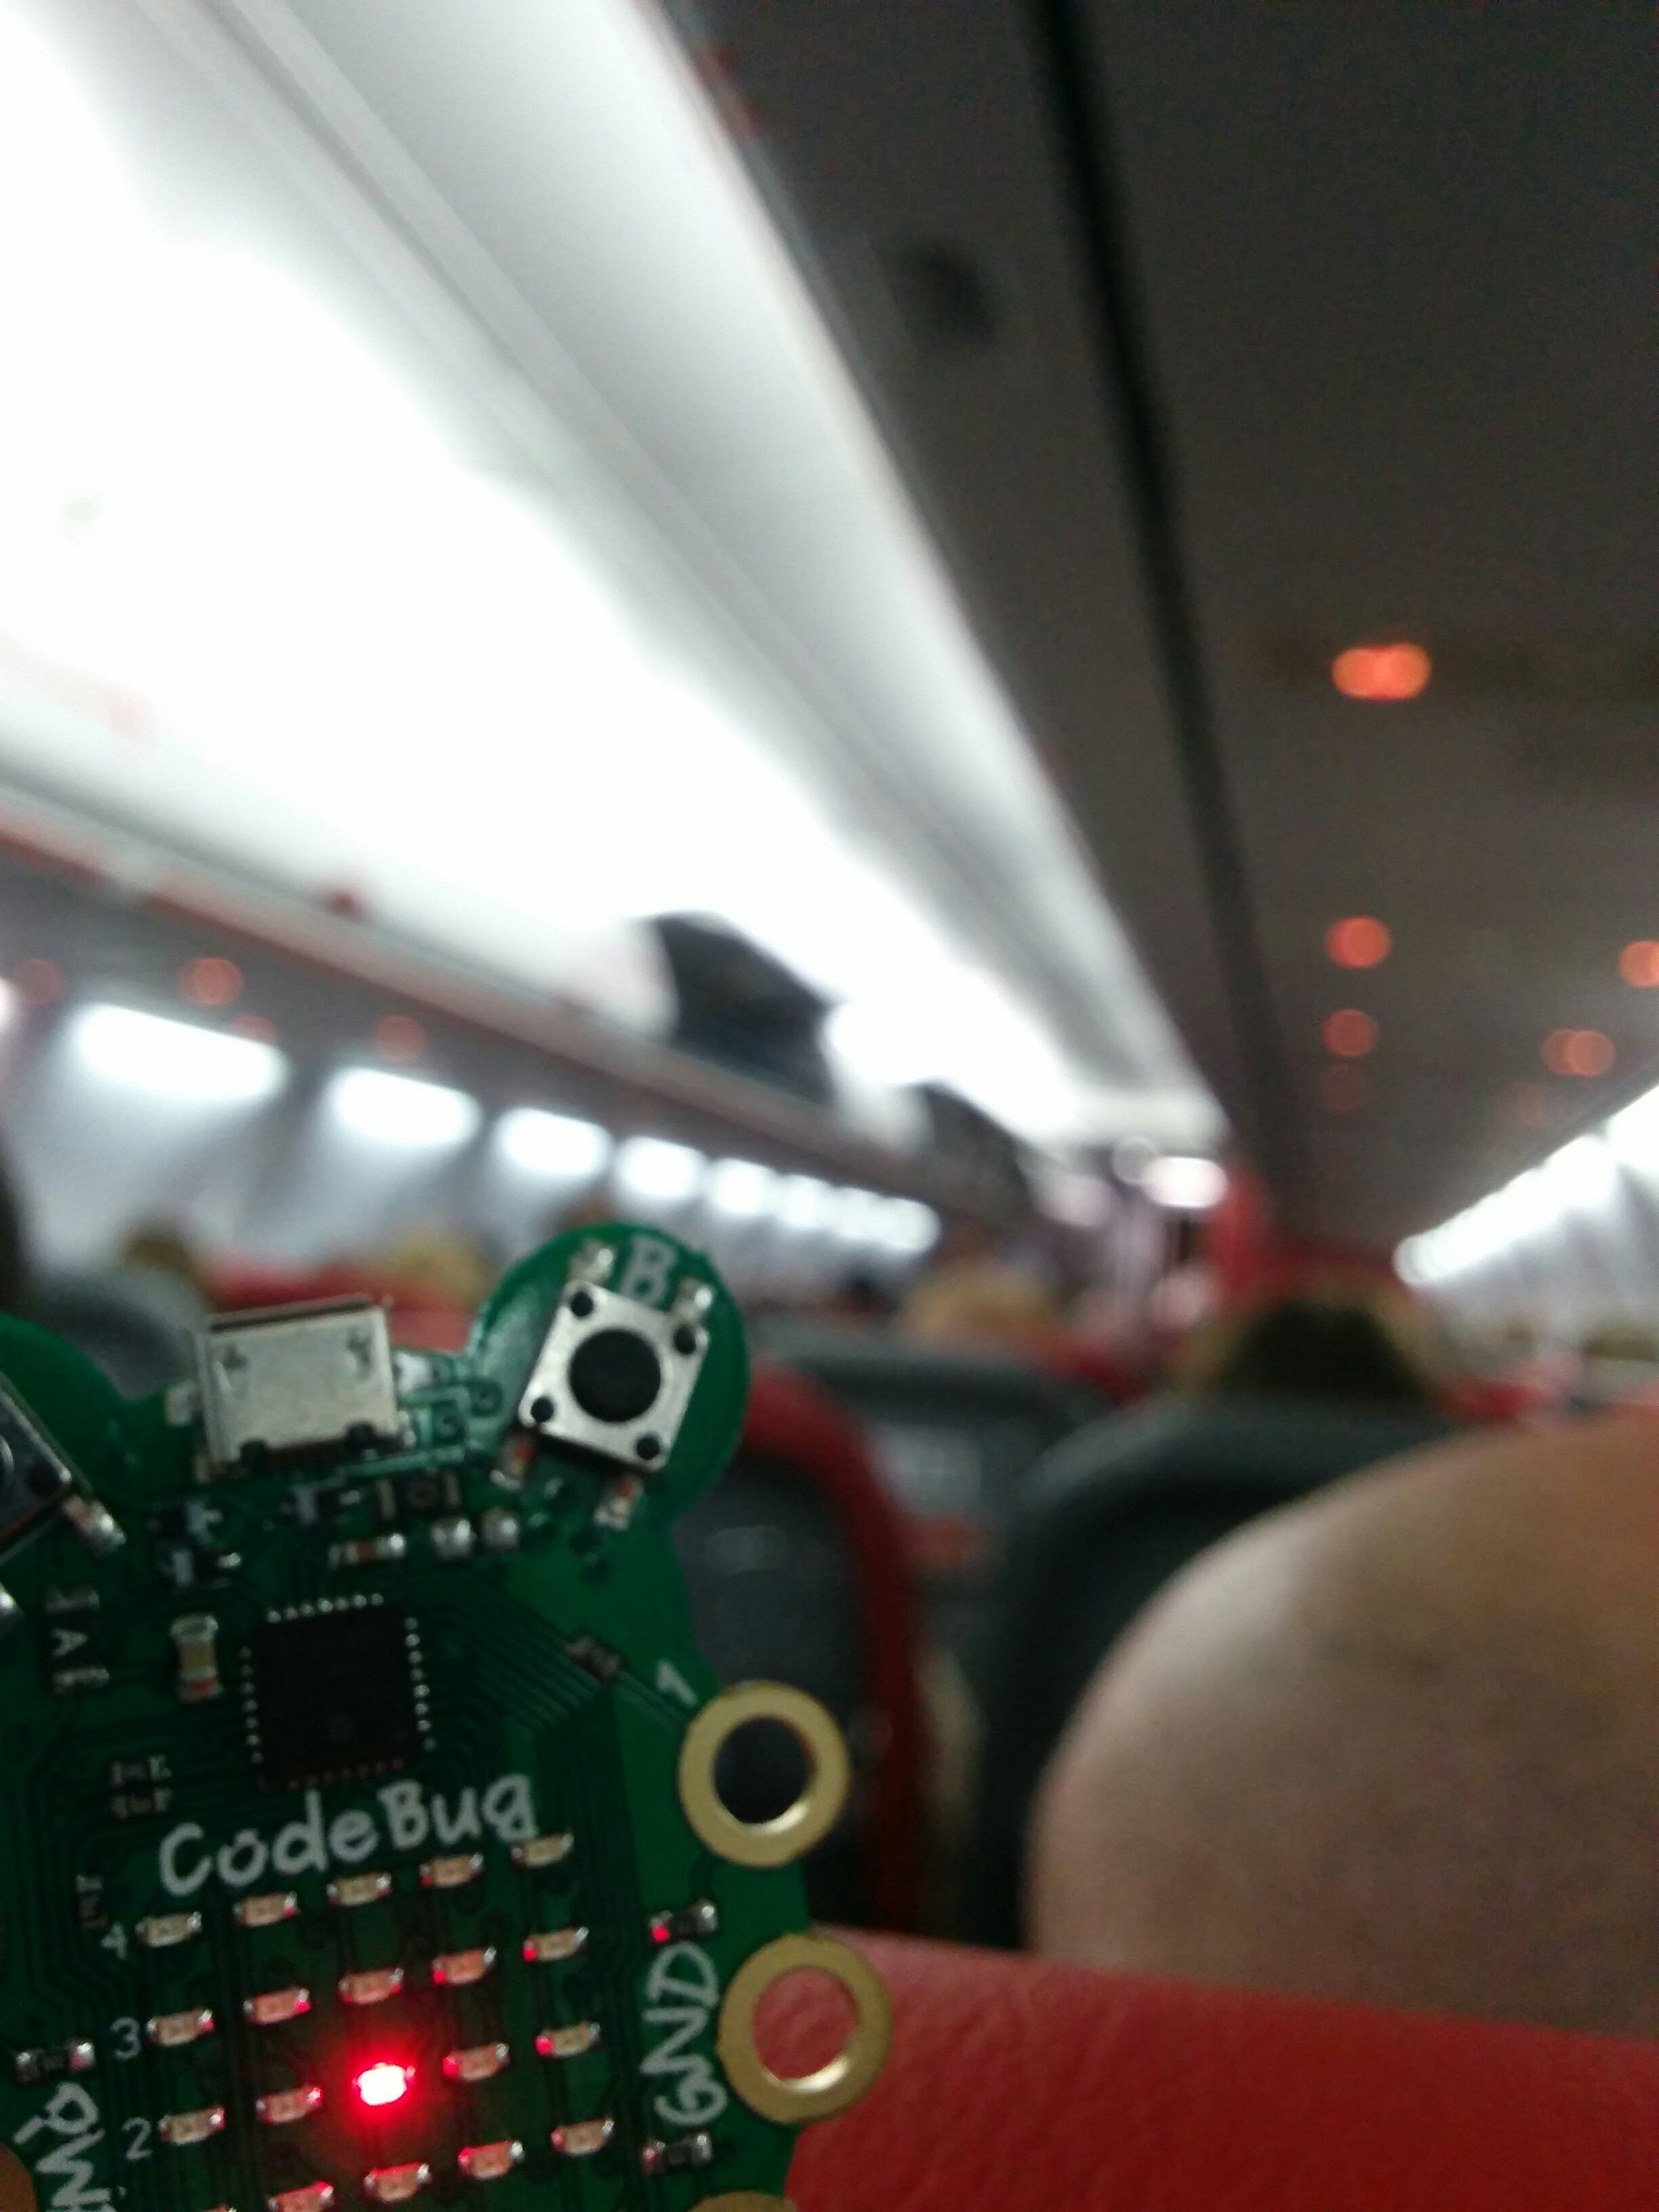 CodeBug on the plane to Rome